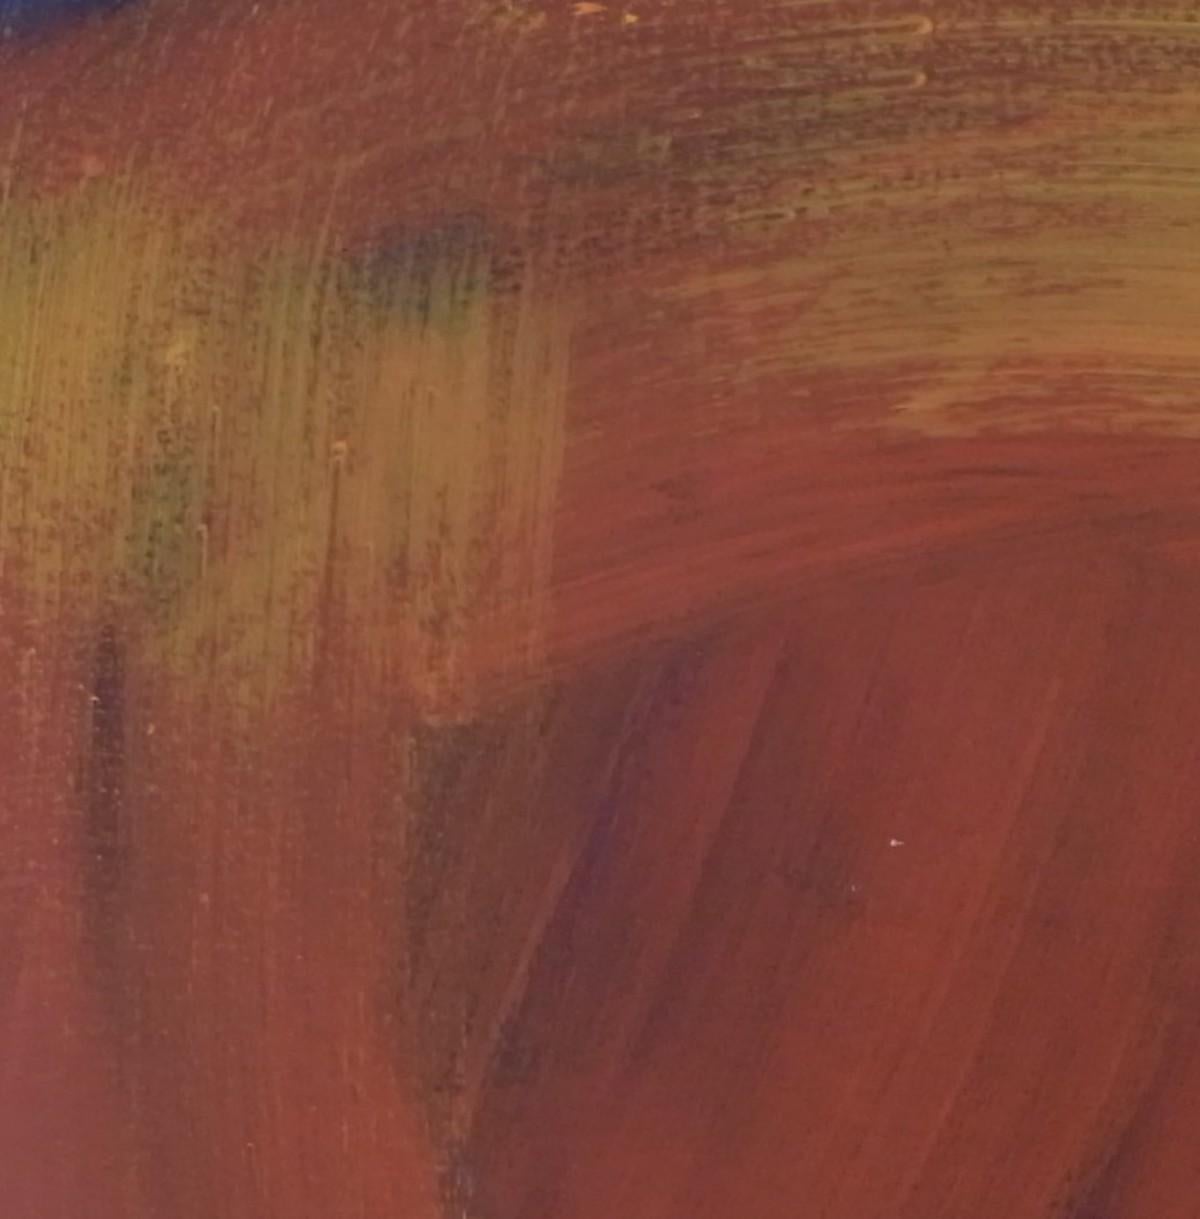 Dies ist ein originales abstraktes Acrylgemälde auf Leinwand.
Entdecken Sie neue Werke von Julia Craig, die Sie online und in unserer Kunstgalerie bei Wychwood Art kaufen können. Julia ist eine abstrakte Künstlerin, deren Liebe zur Farbe in ihren